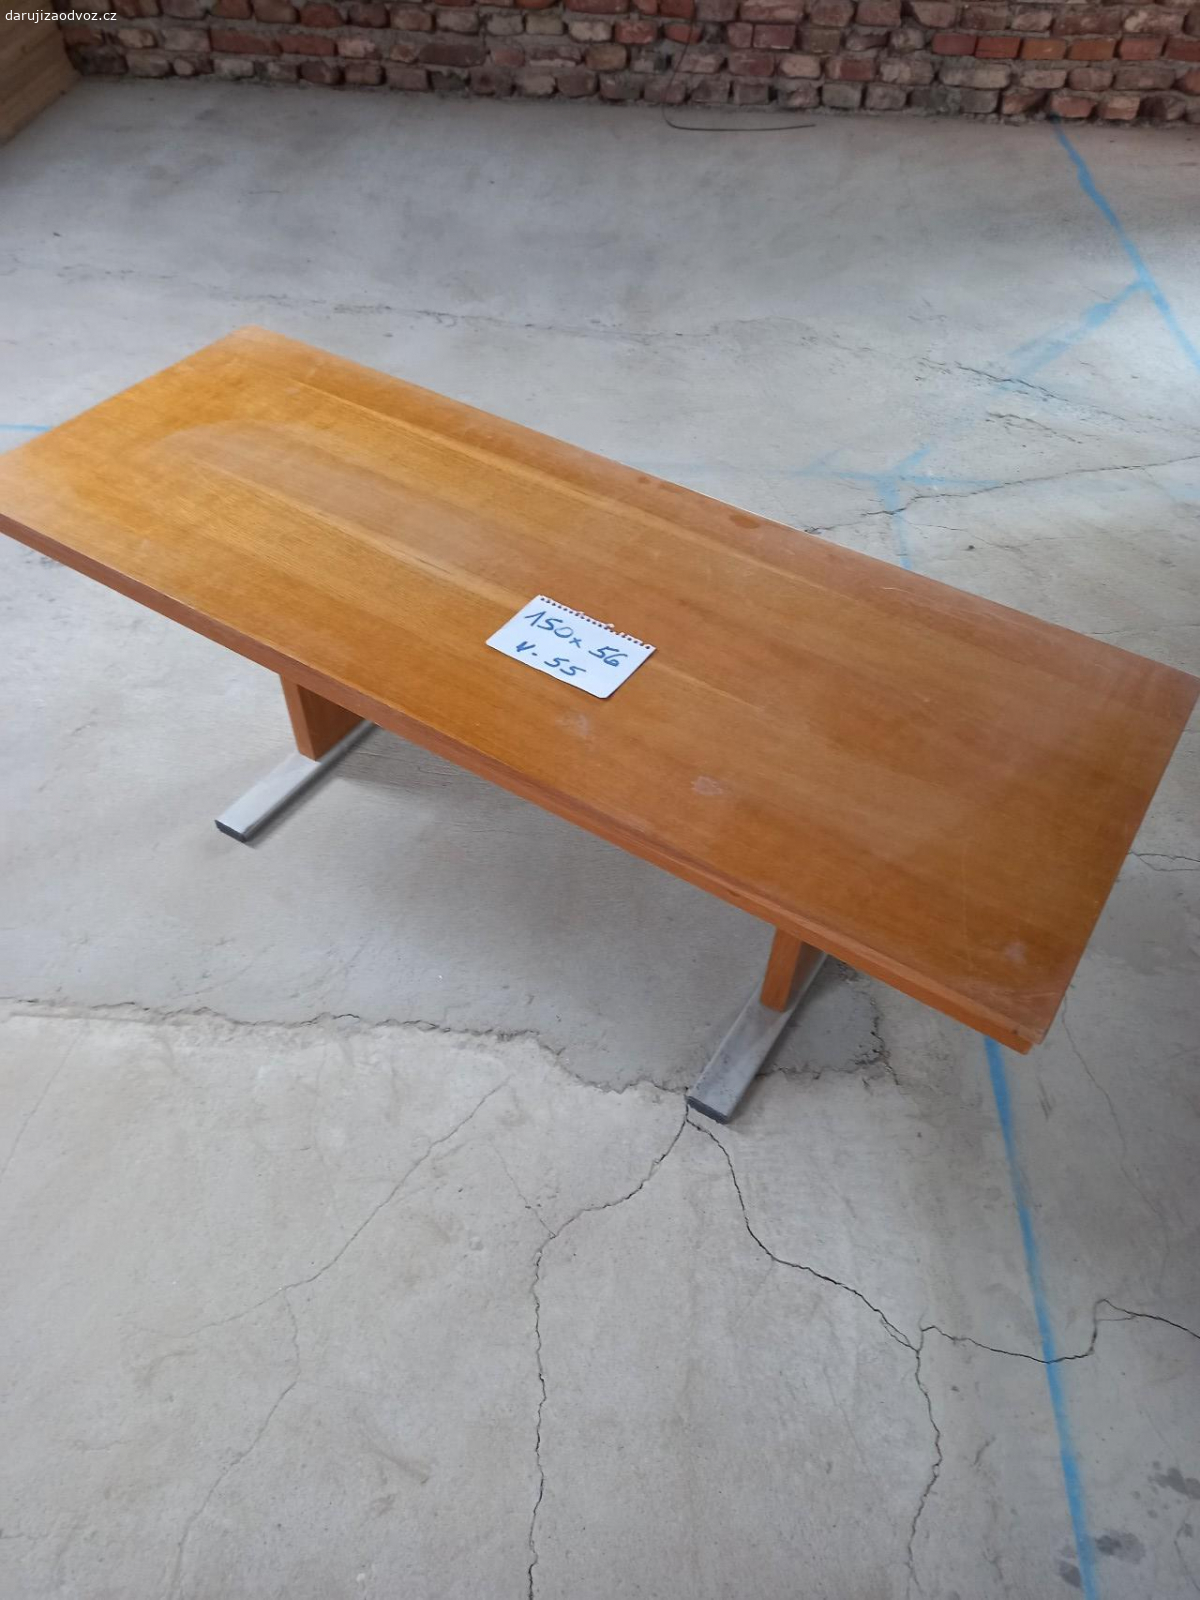 konferenční stolek. leštěný konferenční stolek,  zachovalý,  nepoškrabaný Daruji za odvoz - spěchá